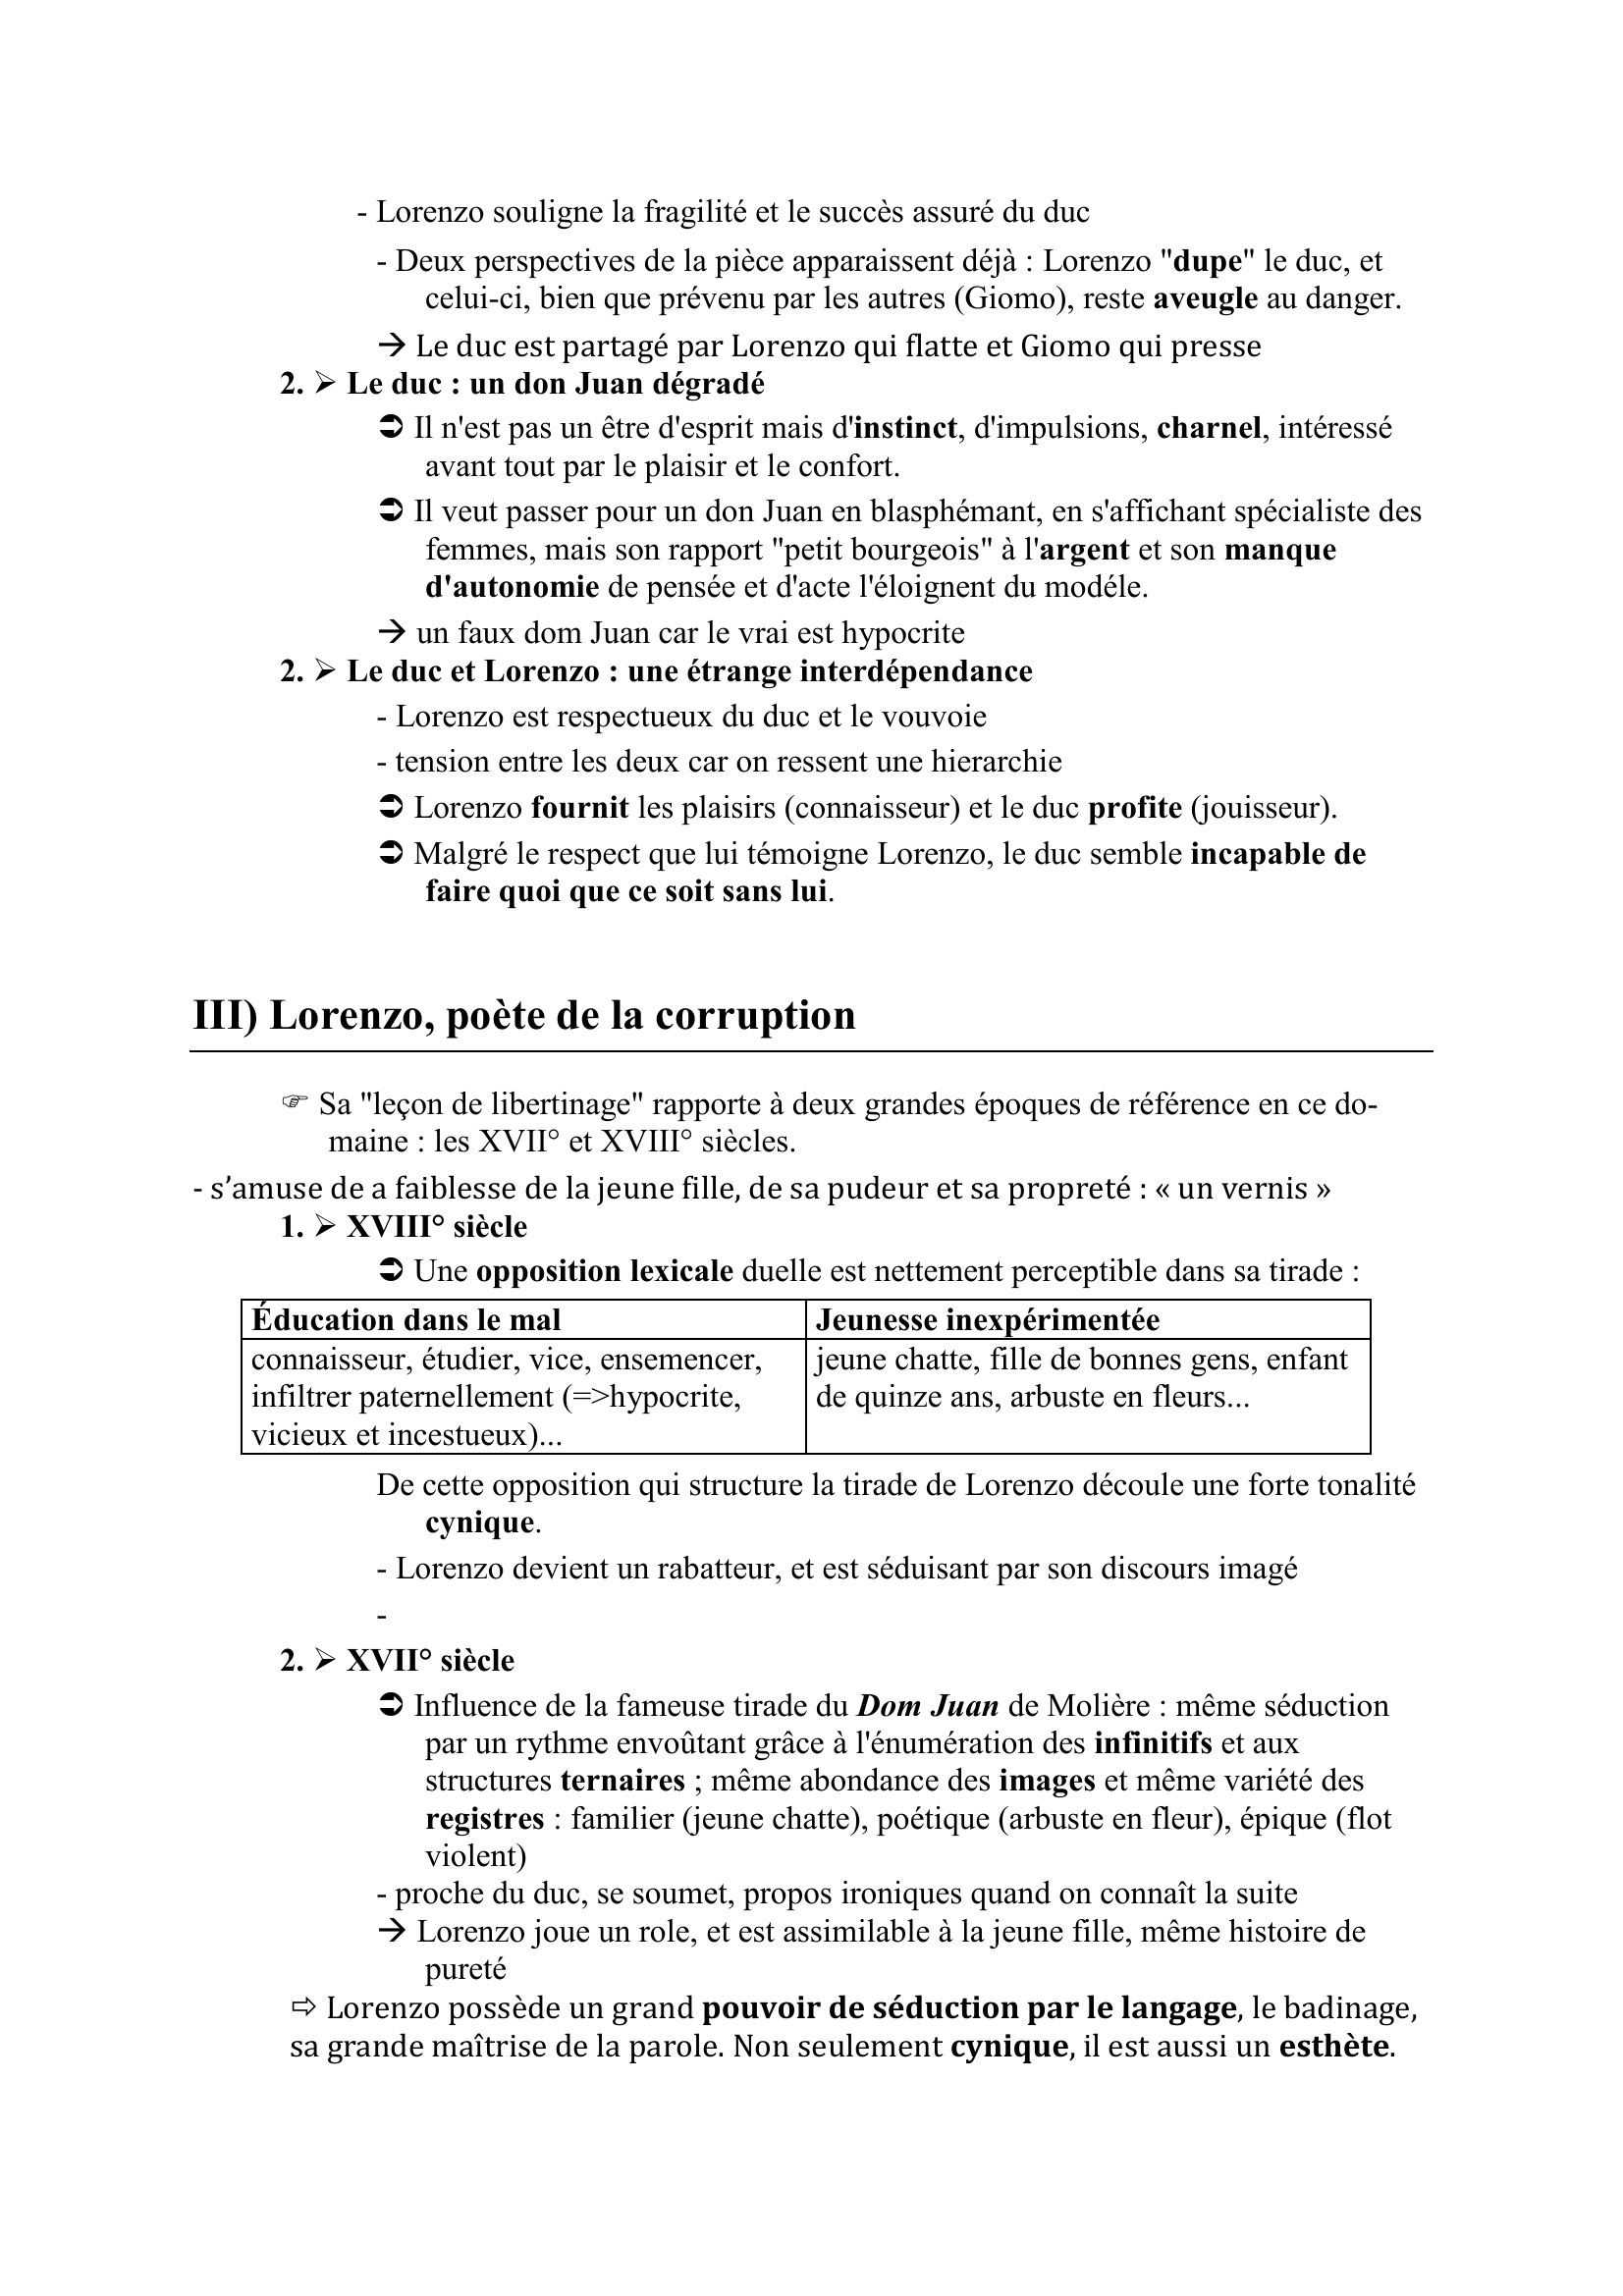 Prévisualisation du document Acte 1 scène 1 de Lorenzaccio - Commentaire